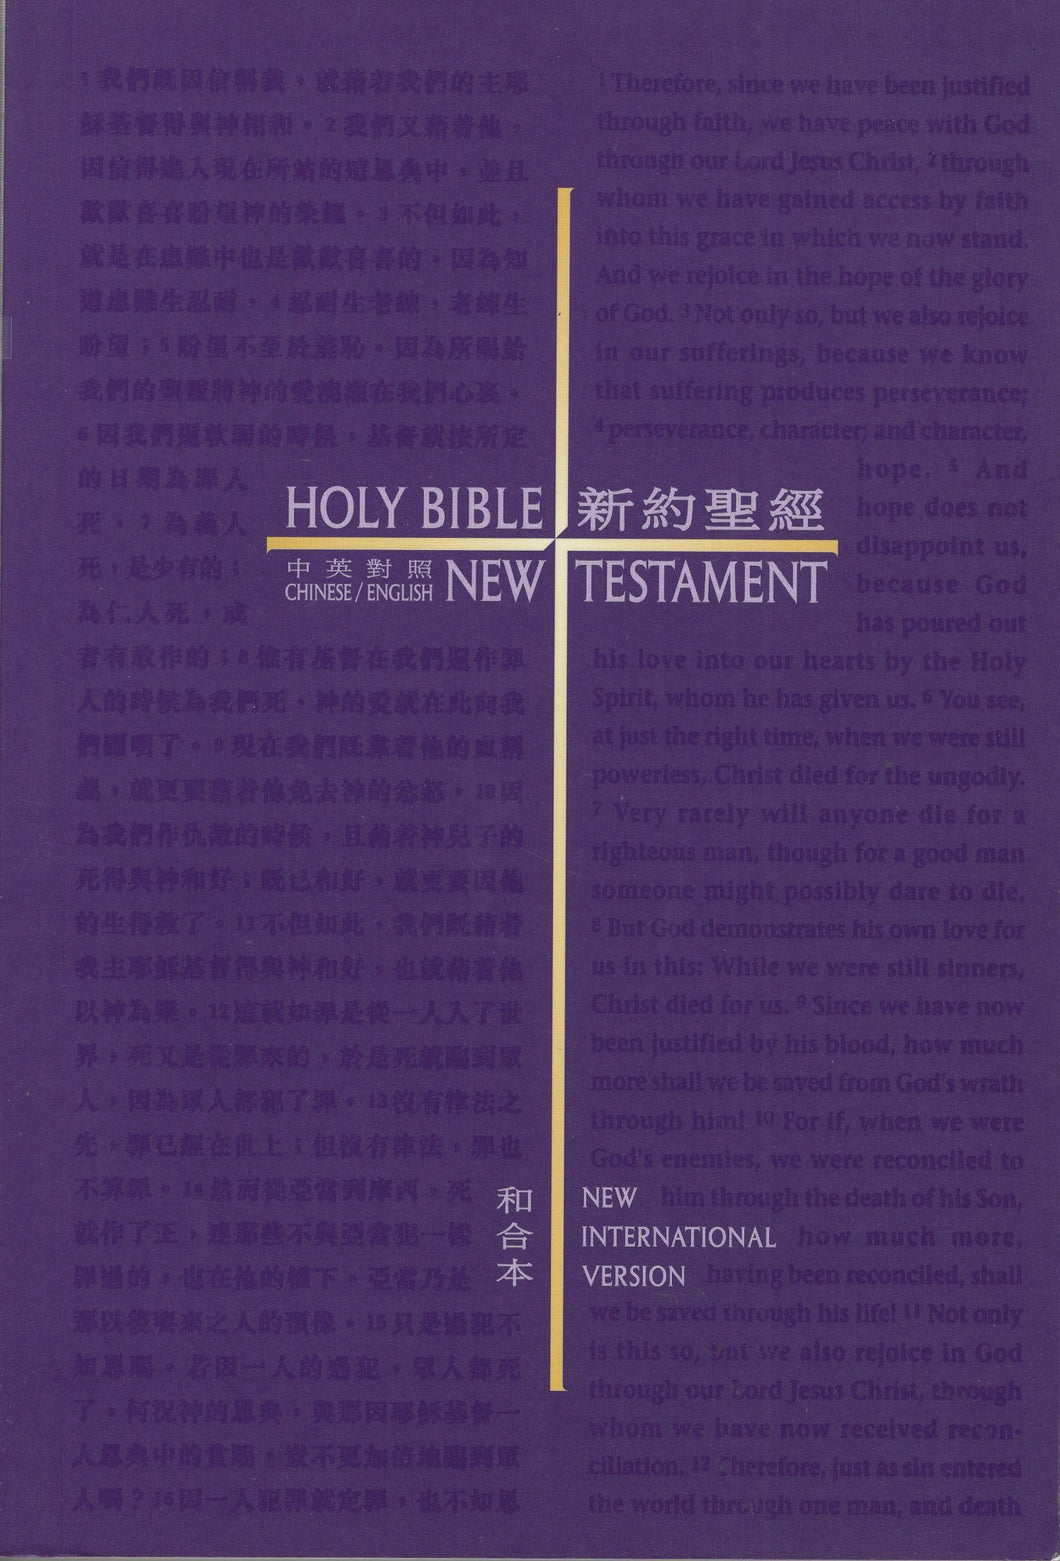 中英新約聖經(繁/平/和合本/NIV) #01B-025B